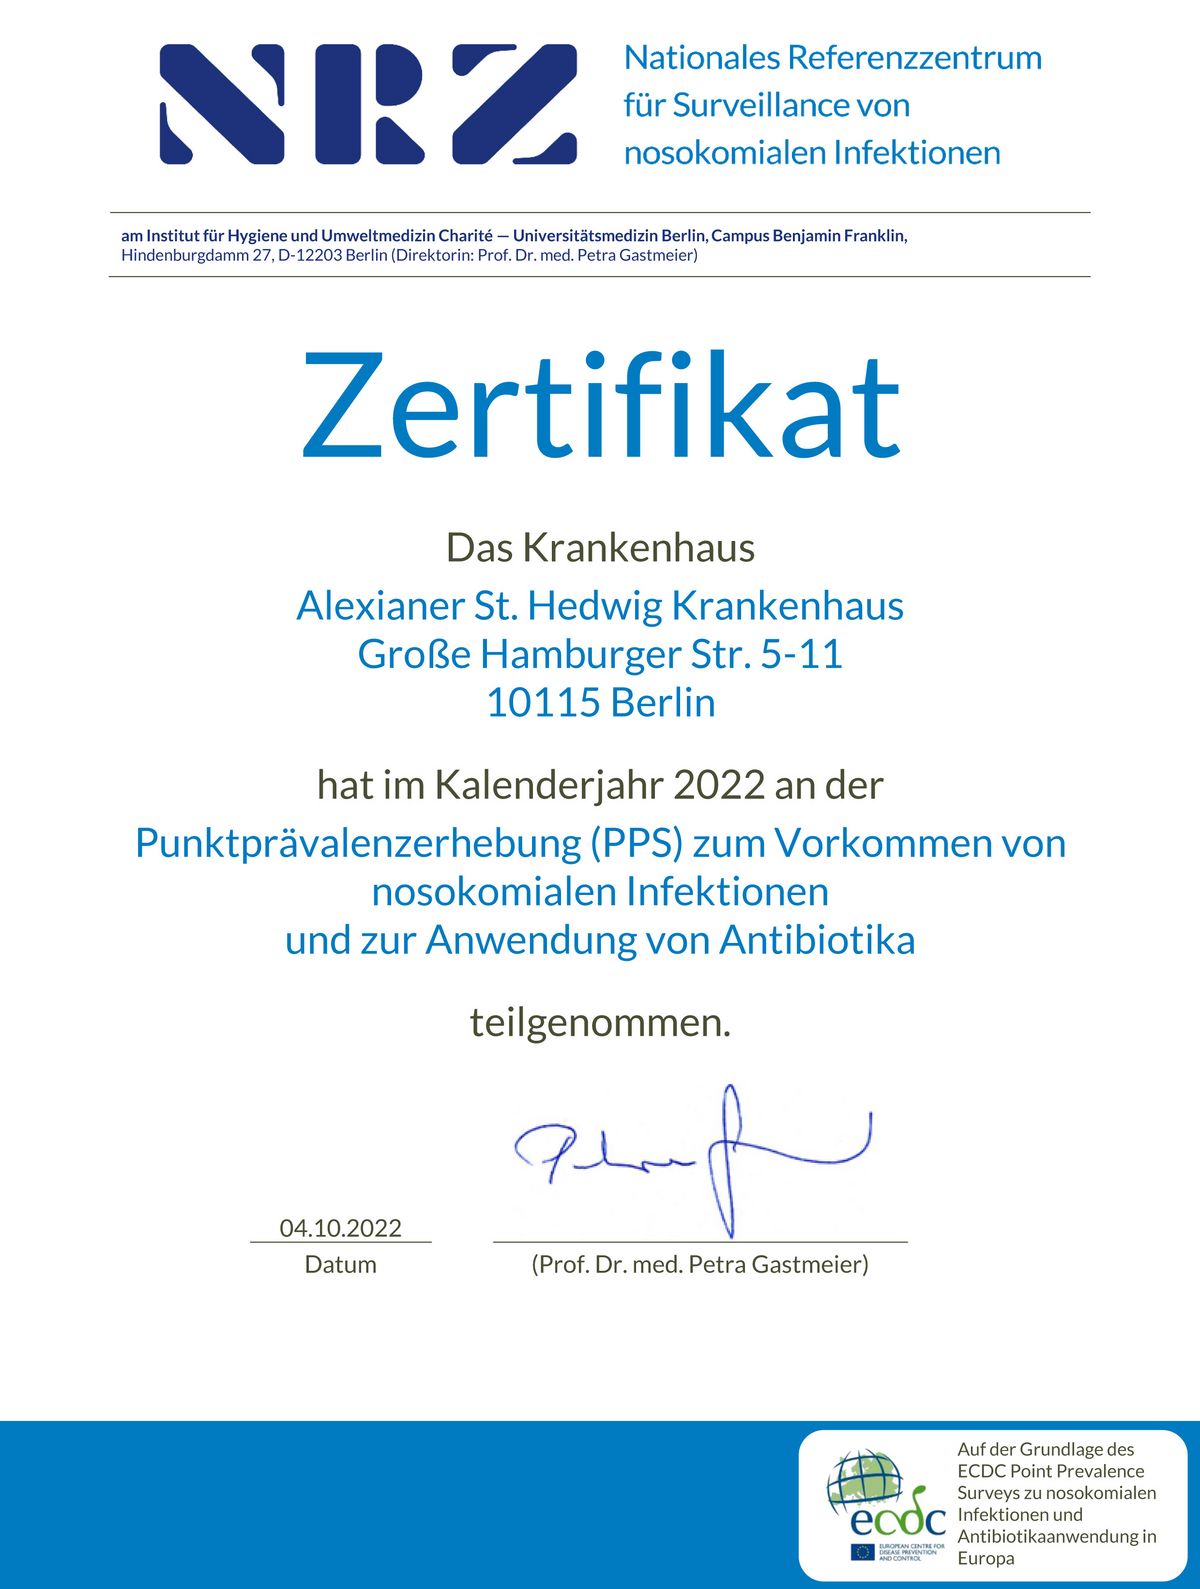 Zertifikat: Punktprävalenzerhebung (PPS) zum Vorkommen von nosokomialen Infektionen und zur Anwendung von Antibiotika 